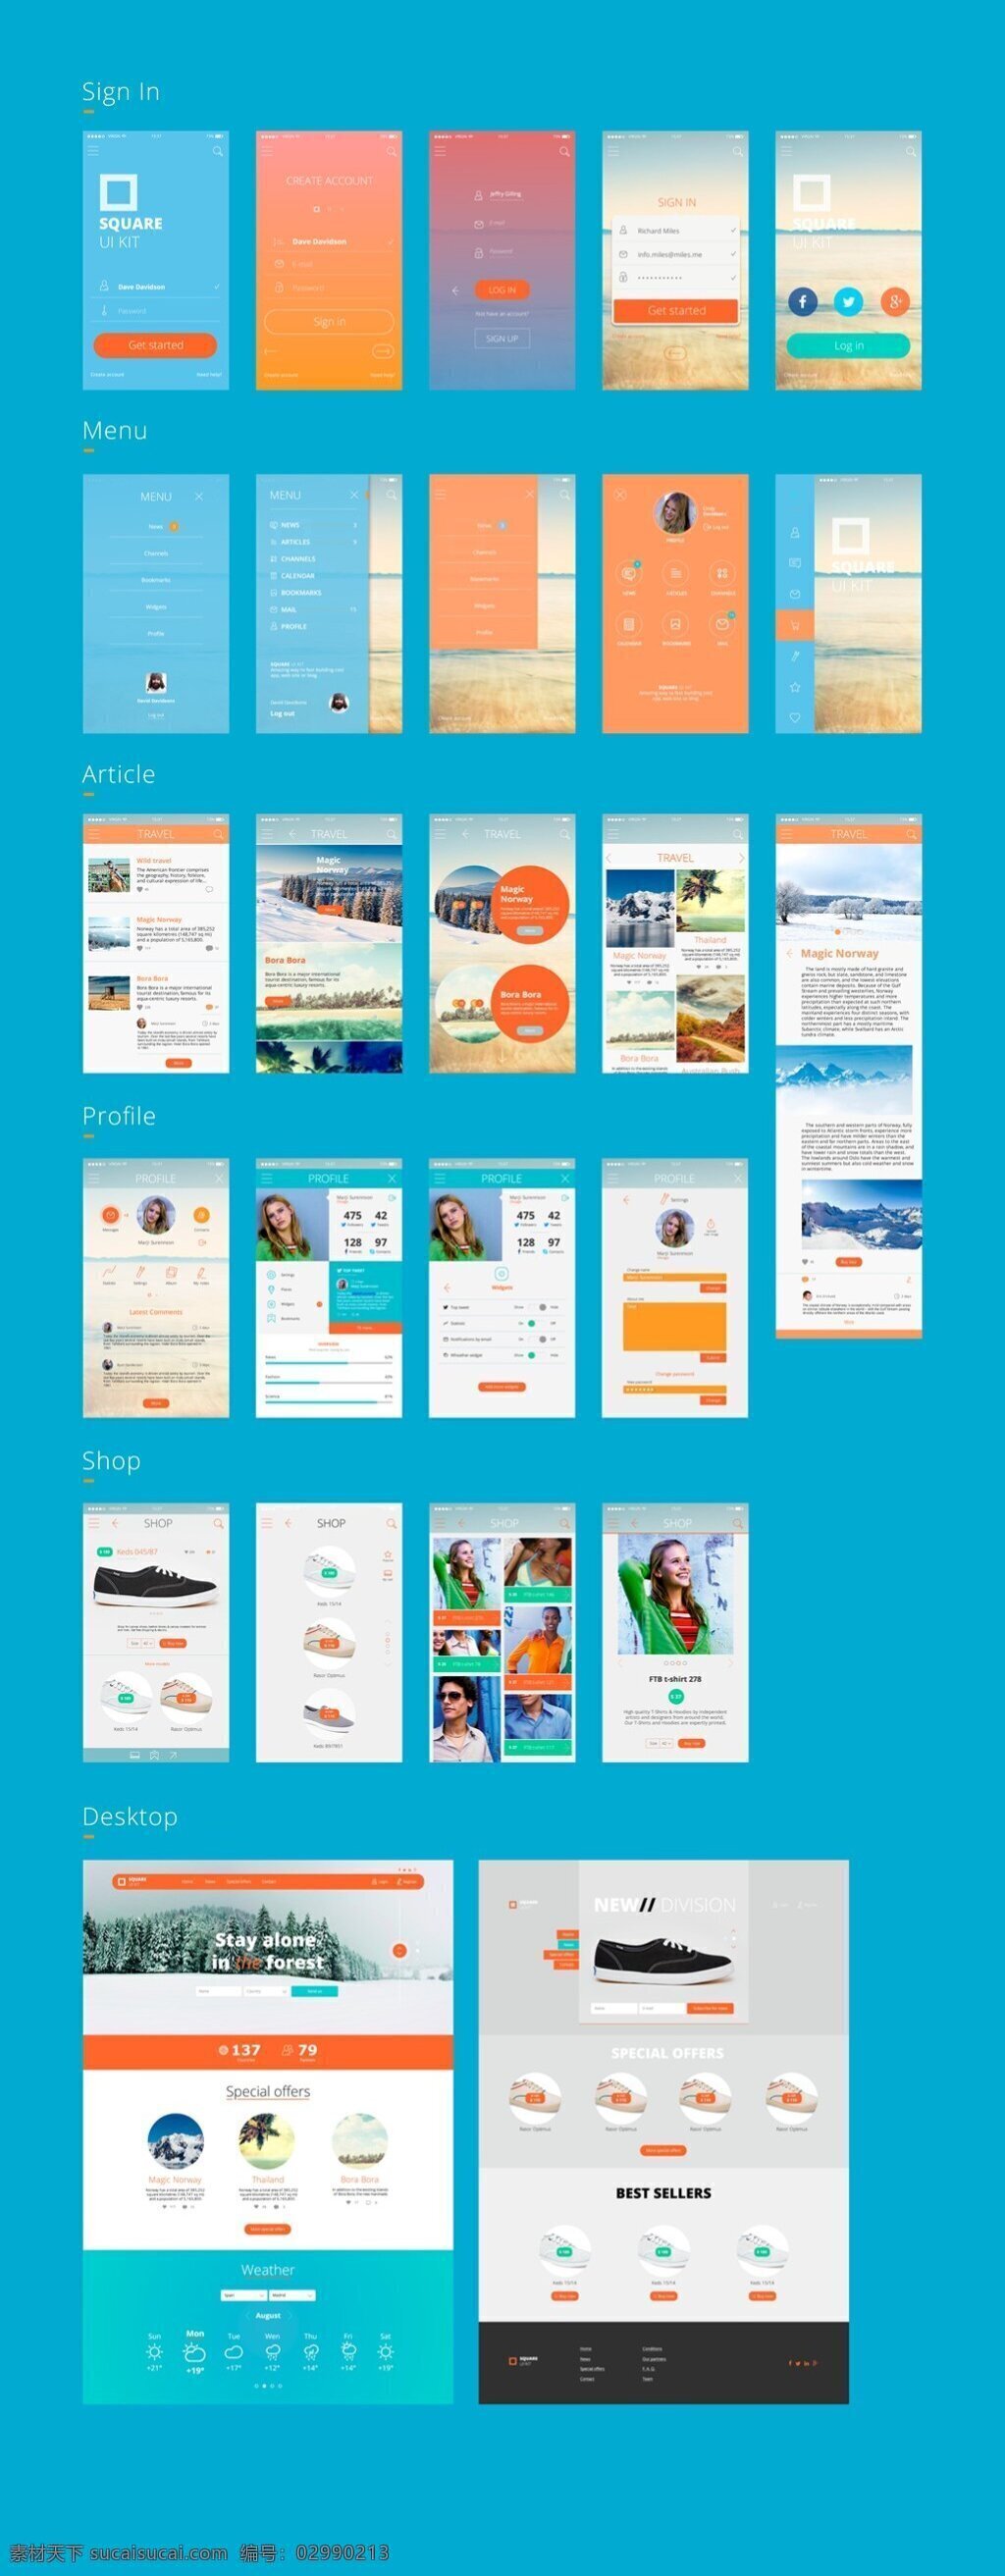 app 界面设计 合集 ui设计 界面版式 版式设计 界面 界面菜单 界面图片素材 app素材 青色 天蓝色